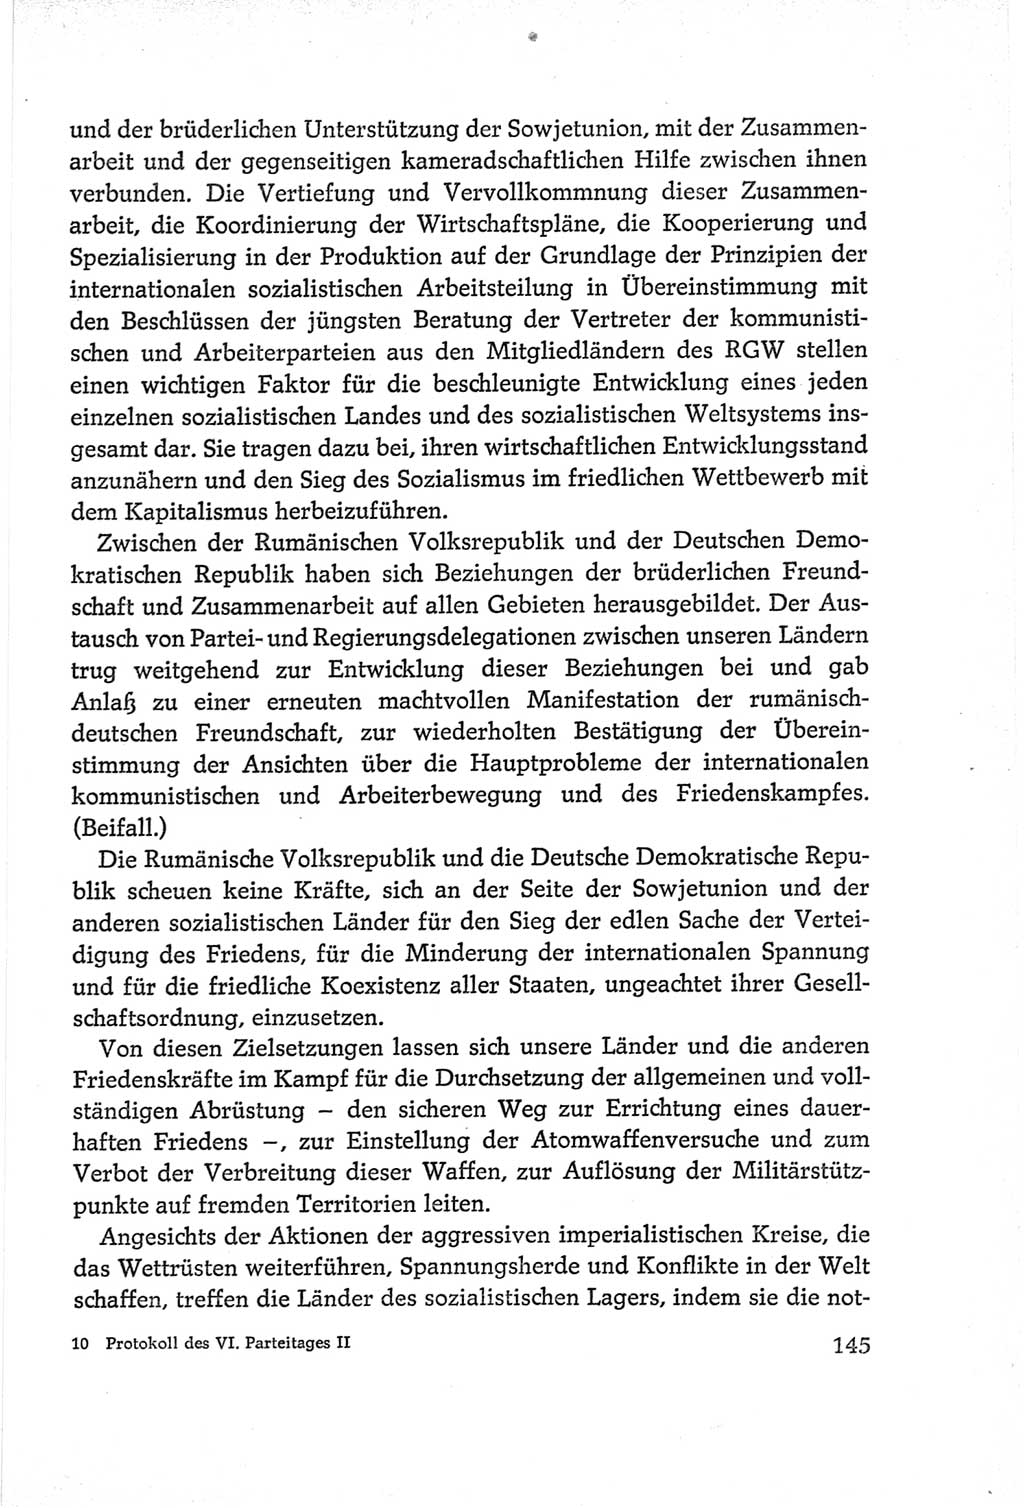 Protokoll der Verhandlungen des Ⅵ. Parteitages der Sozialistischen Einheitspartei Deutschlands (SED) [Deutsche Demokratische Republik (DDR)] 1963, Band Ⅱ, Seite 145 (Prot. Verh. Ⅵ. PT SED DDR 1963, Bd. Ⅱ, S. 145)